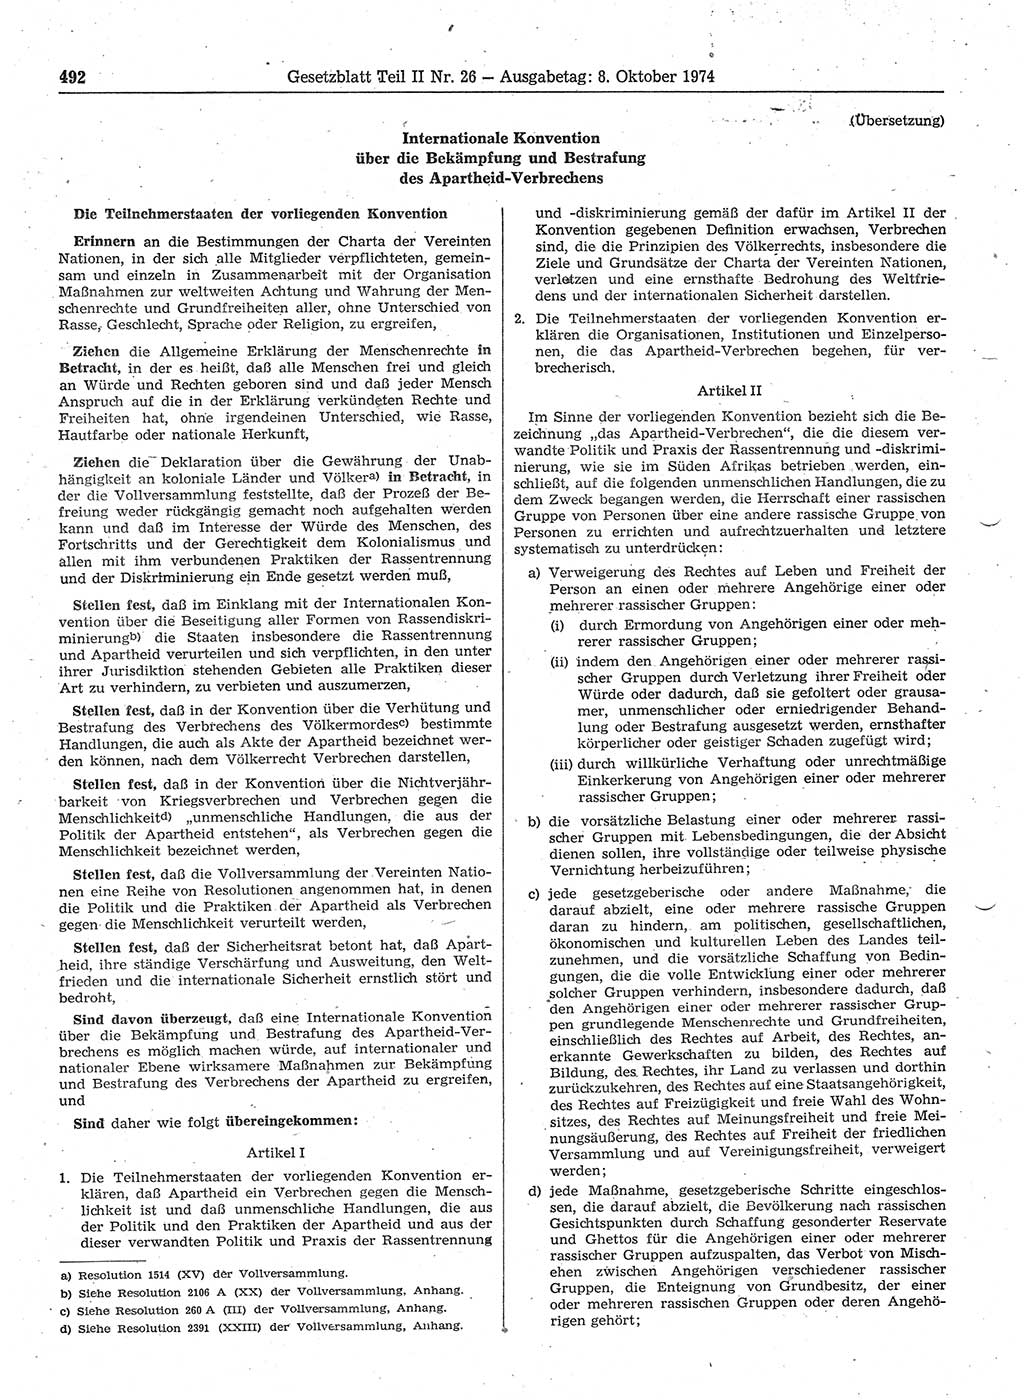 Gesetzblatt (GBl.) der Deutschen Demokratischen Republik (DDR) Teil ⅠⅠ 1974, Seite 492 (GBl. DDR ⅠⅠ 1974, S. 492)